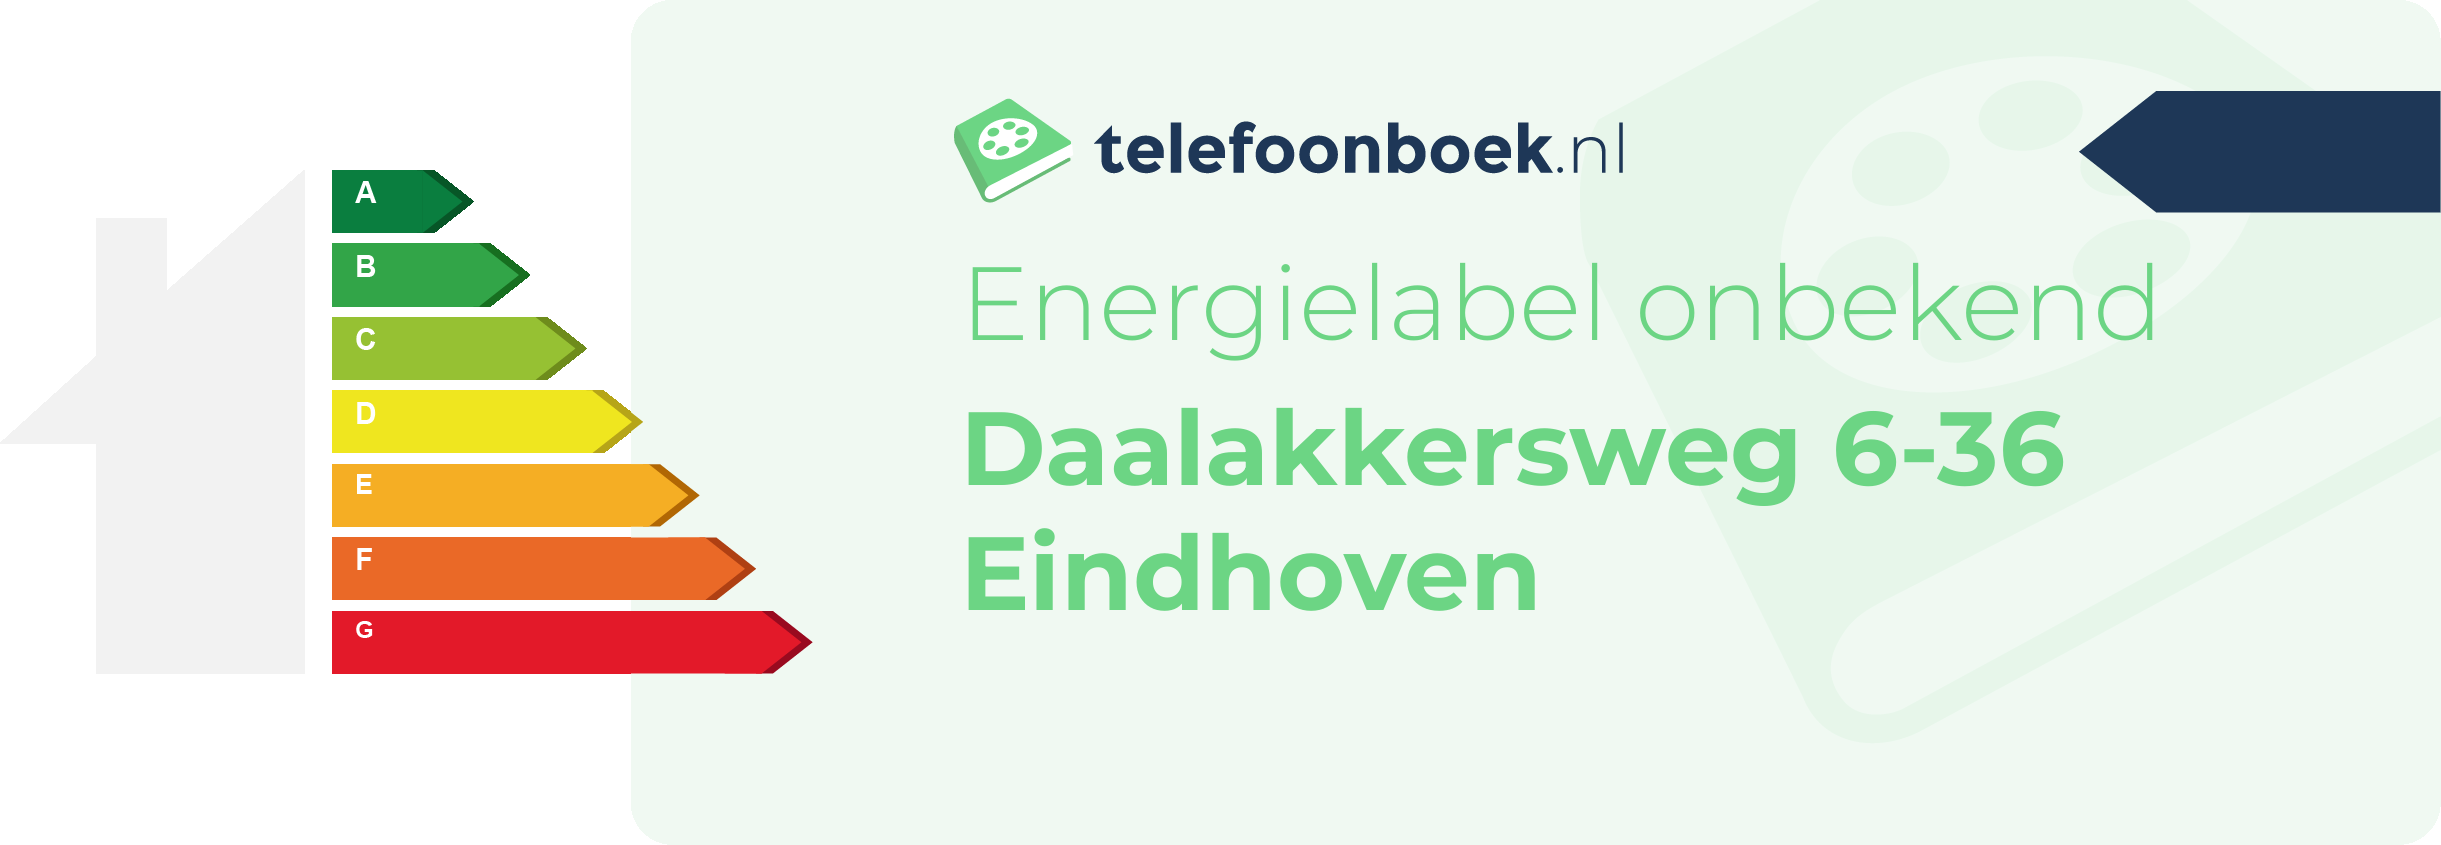 Energielabel Daalakkersweg 6-36 Eindhoven